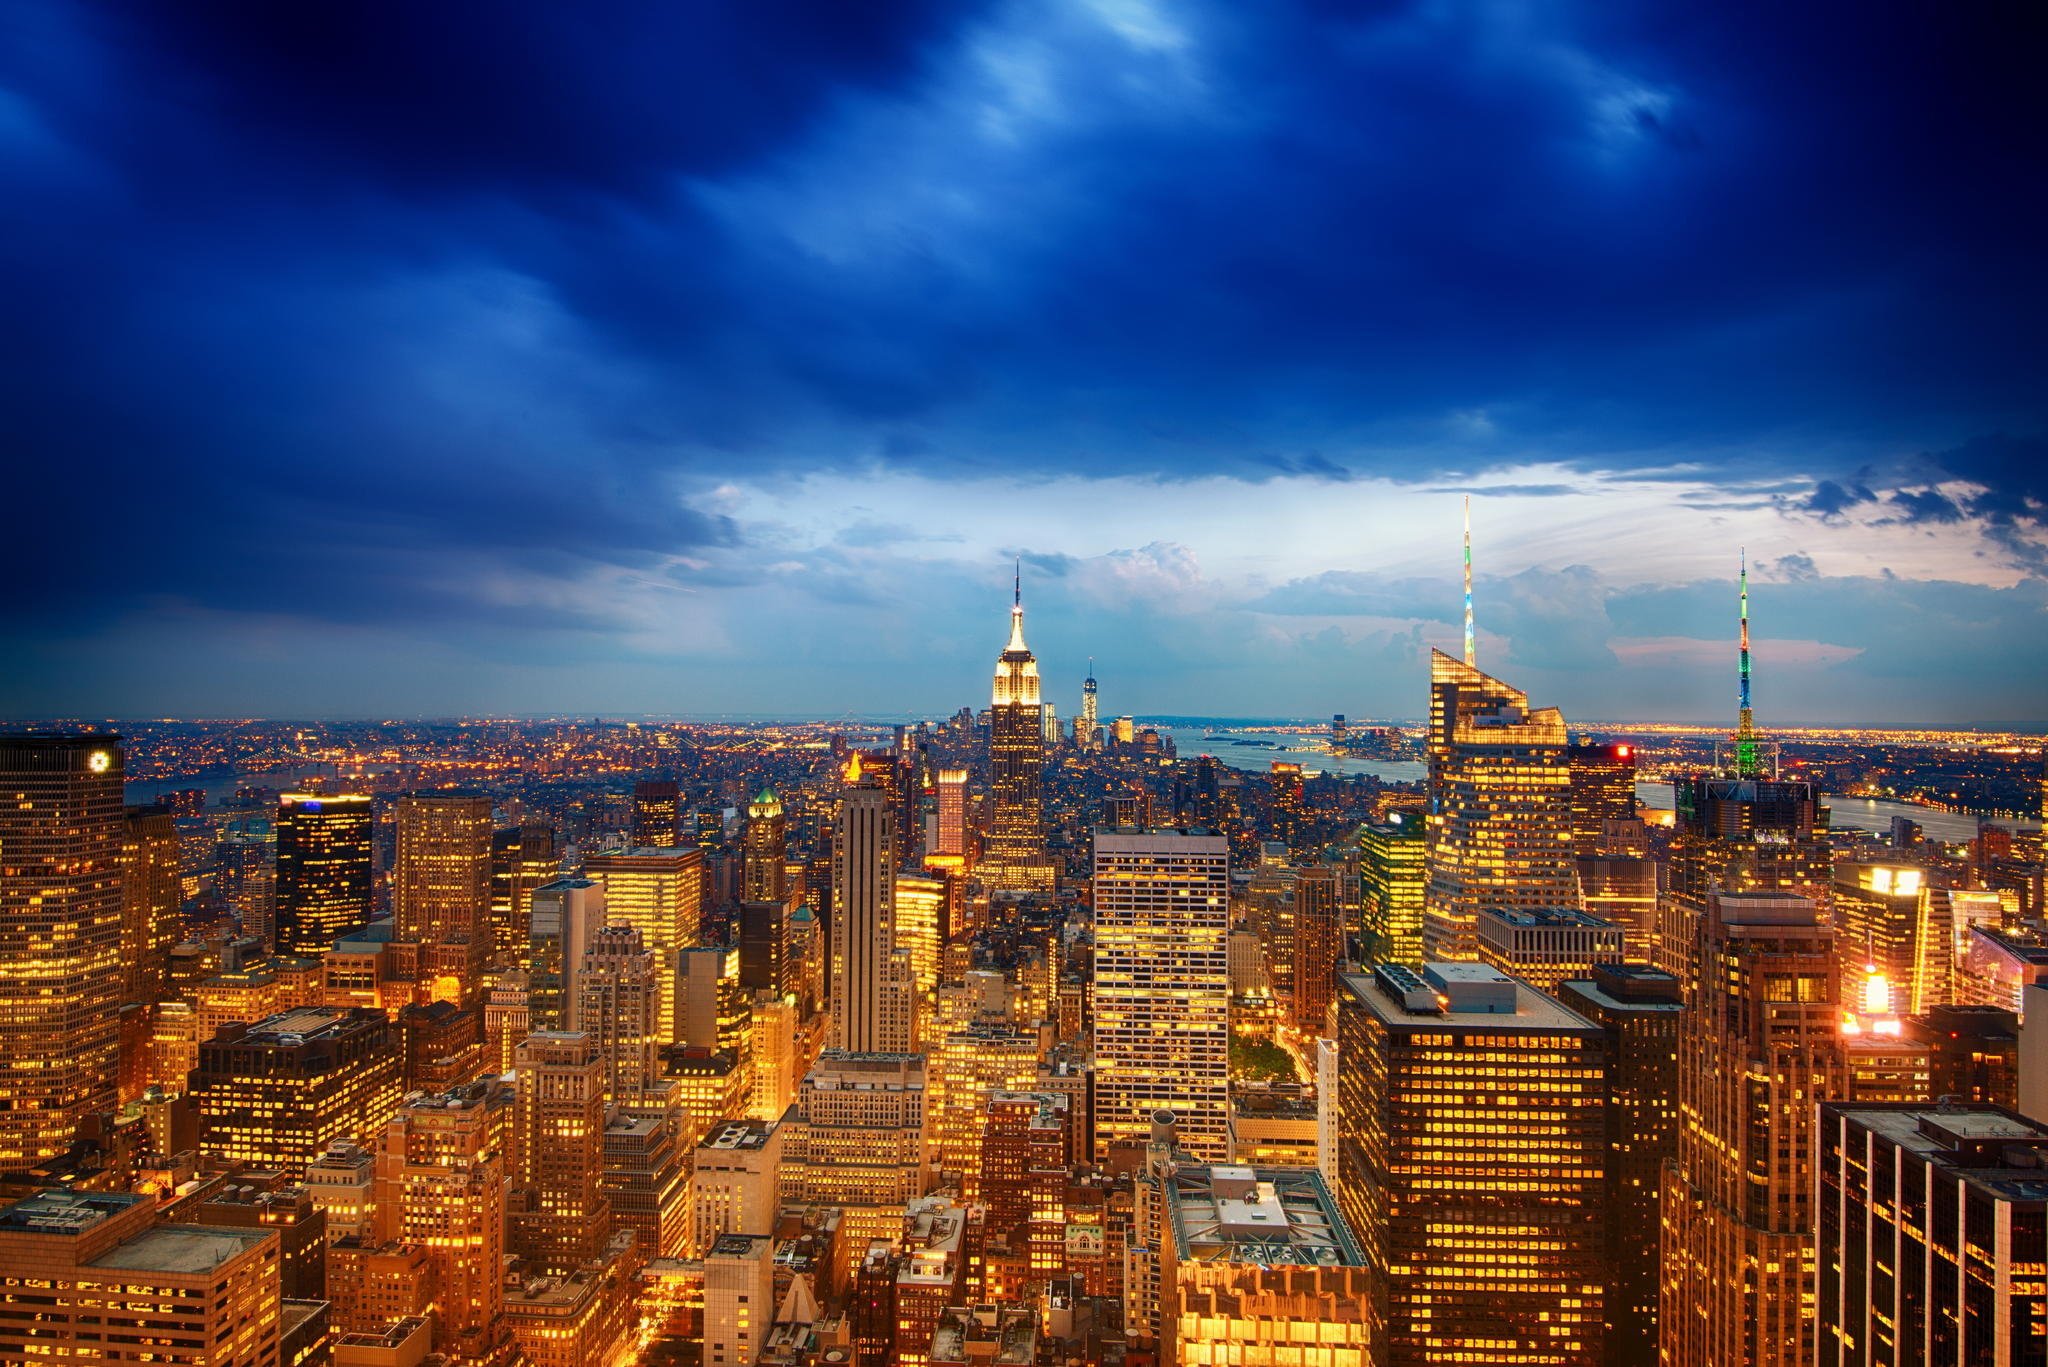 New York: New York thật đặc sắc với các tòa nhà cao tầng đầy màu sắc, những con phố sầm uất và đầy năng lượng. Hãy xem bức ảnh để chiêm ngưỡng vẻ đẹp của thành phố này và đắm mình trong không khí sôi động của New York.